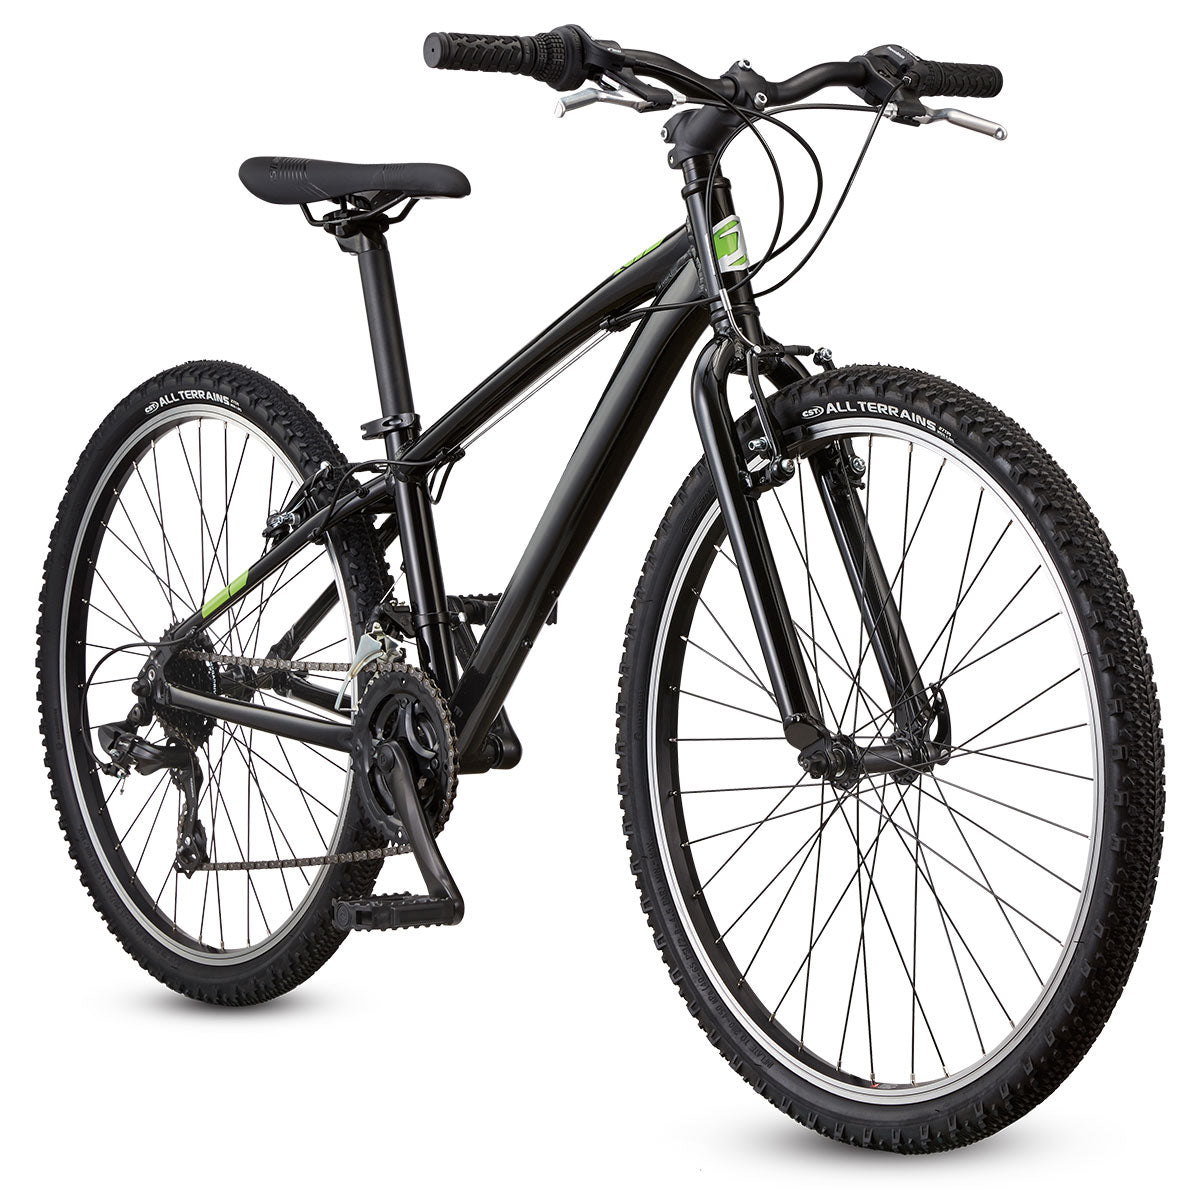 Featherlight 26" Kids Hardtail Mountain Bike - Black (Medium, 15")